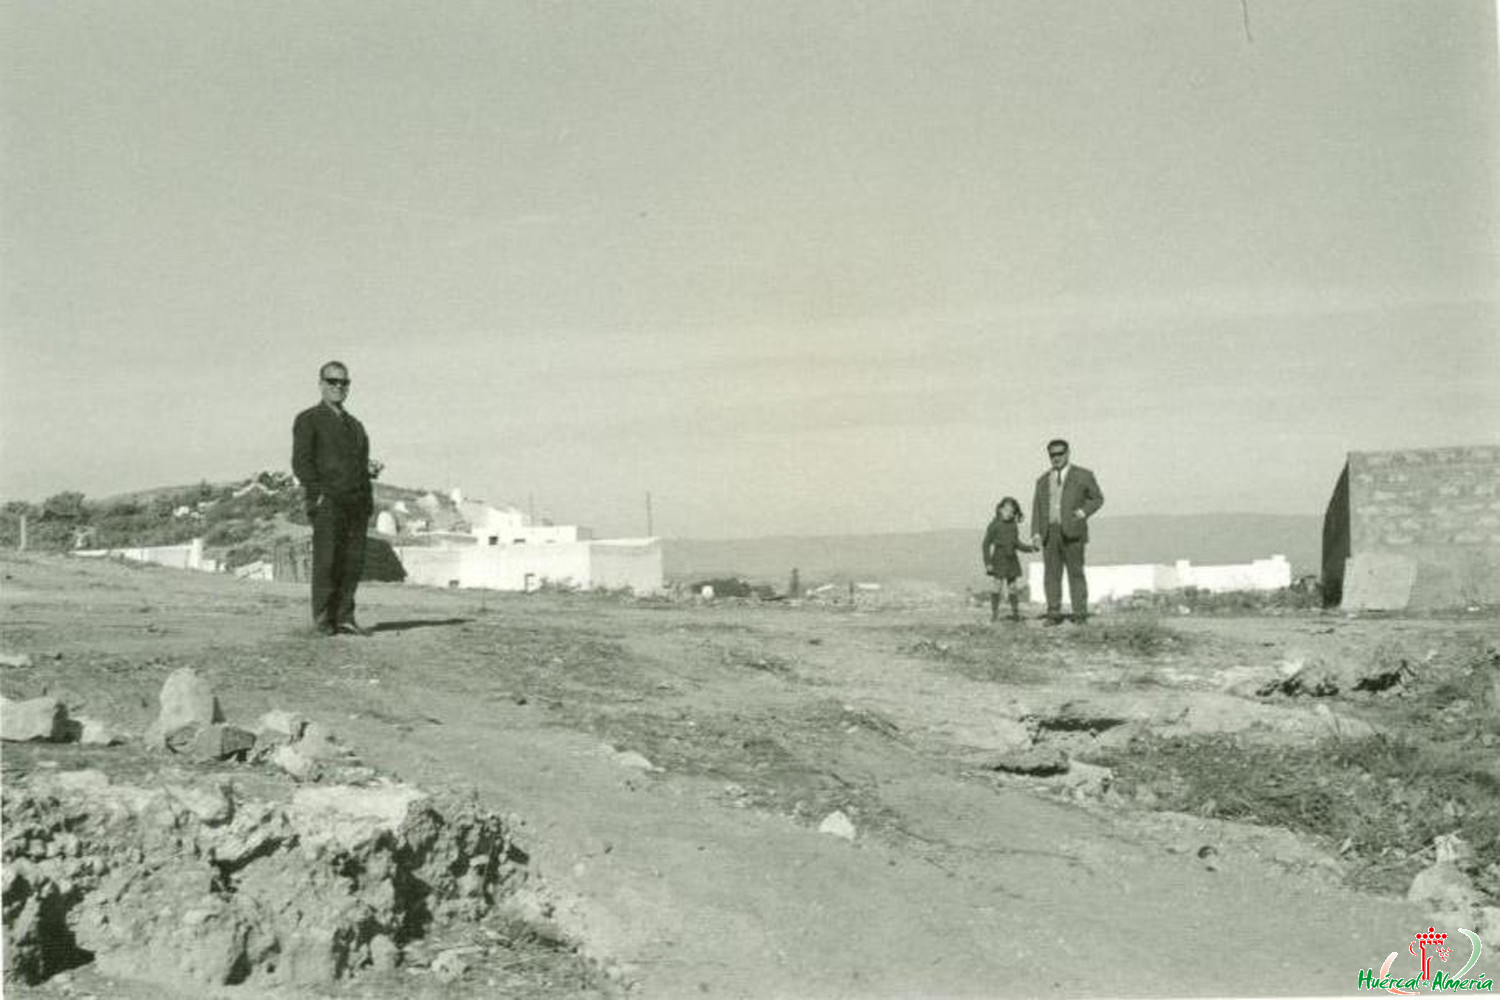 Cerro de Don Sixto. 1968